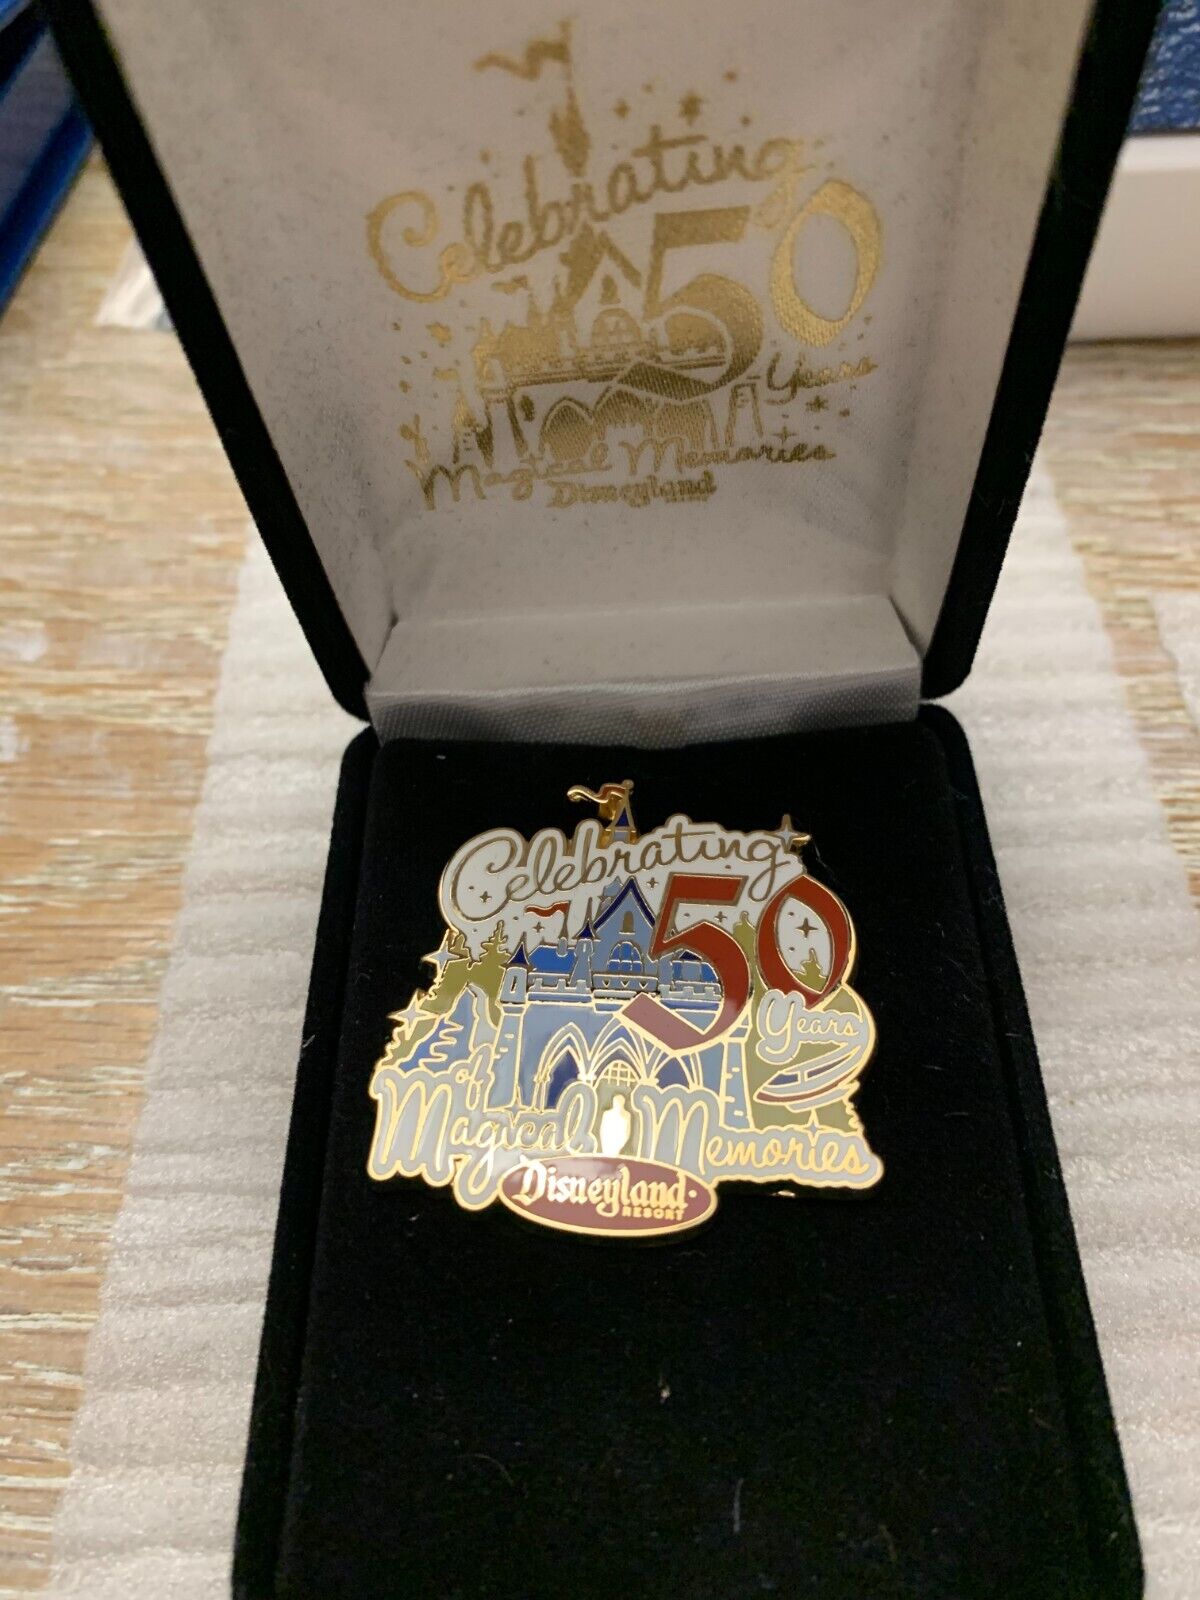 2005 Disneyland Magical Memories Celebrating 50th Anniversary LE pin